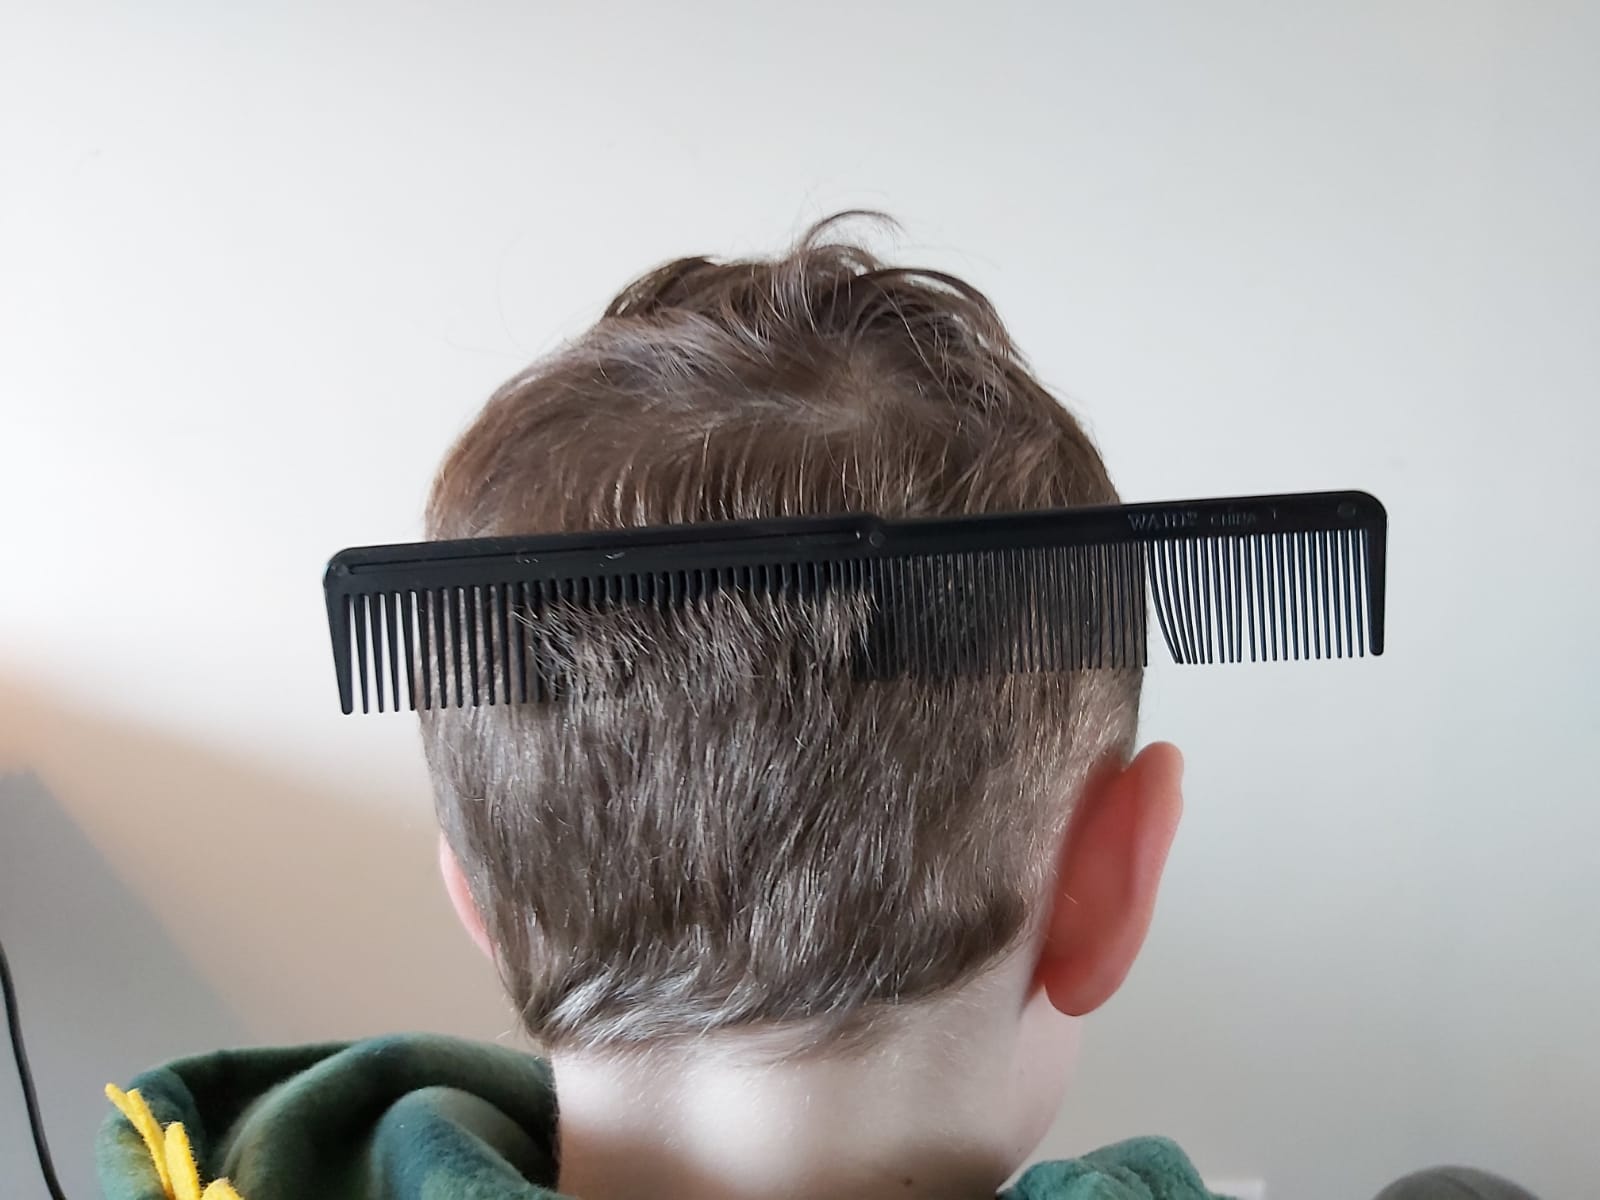 bijeenkomst bewijs Boer zelf haren van je kind knippen zo doe je dat met kort en lang haar